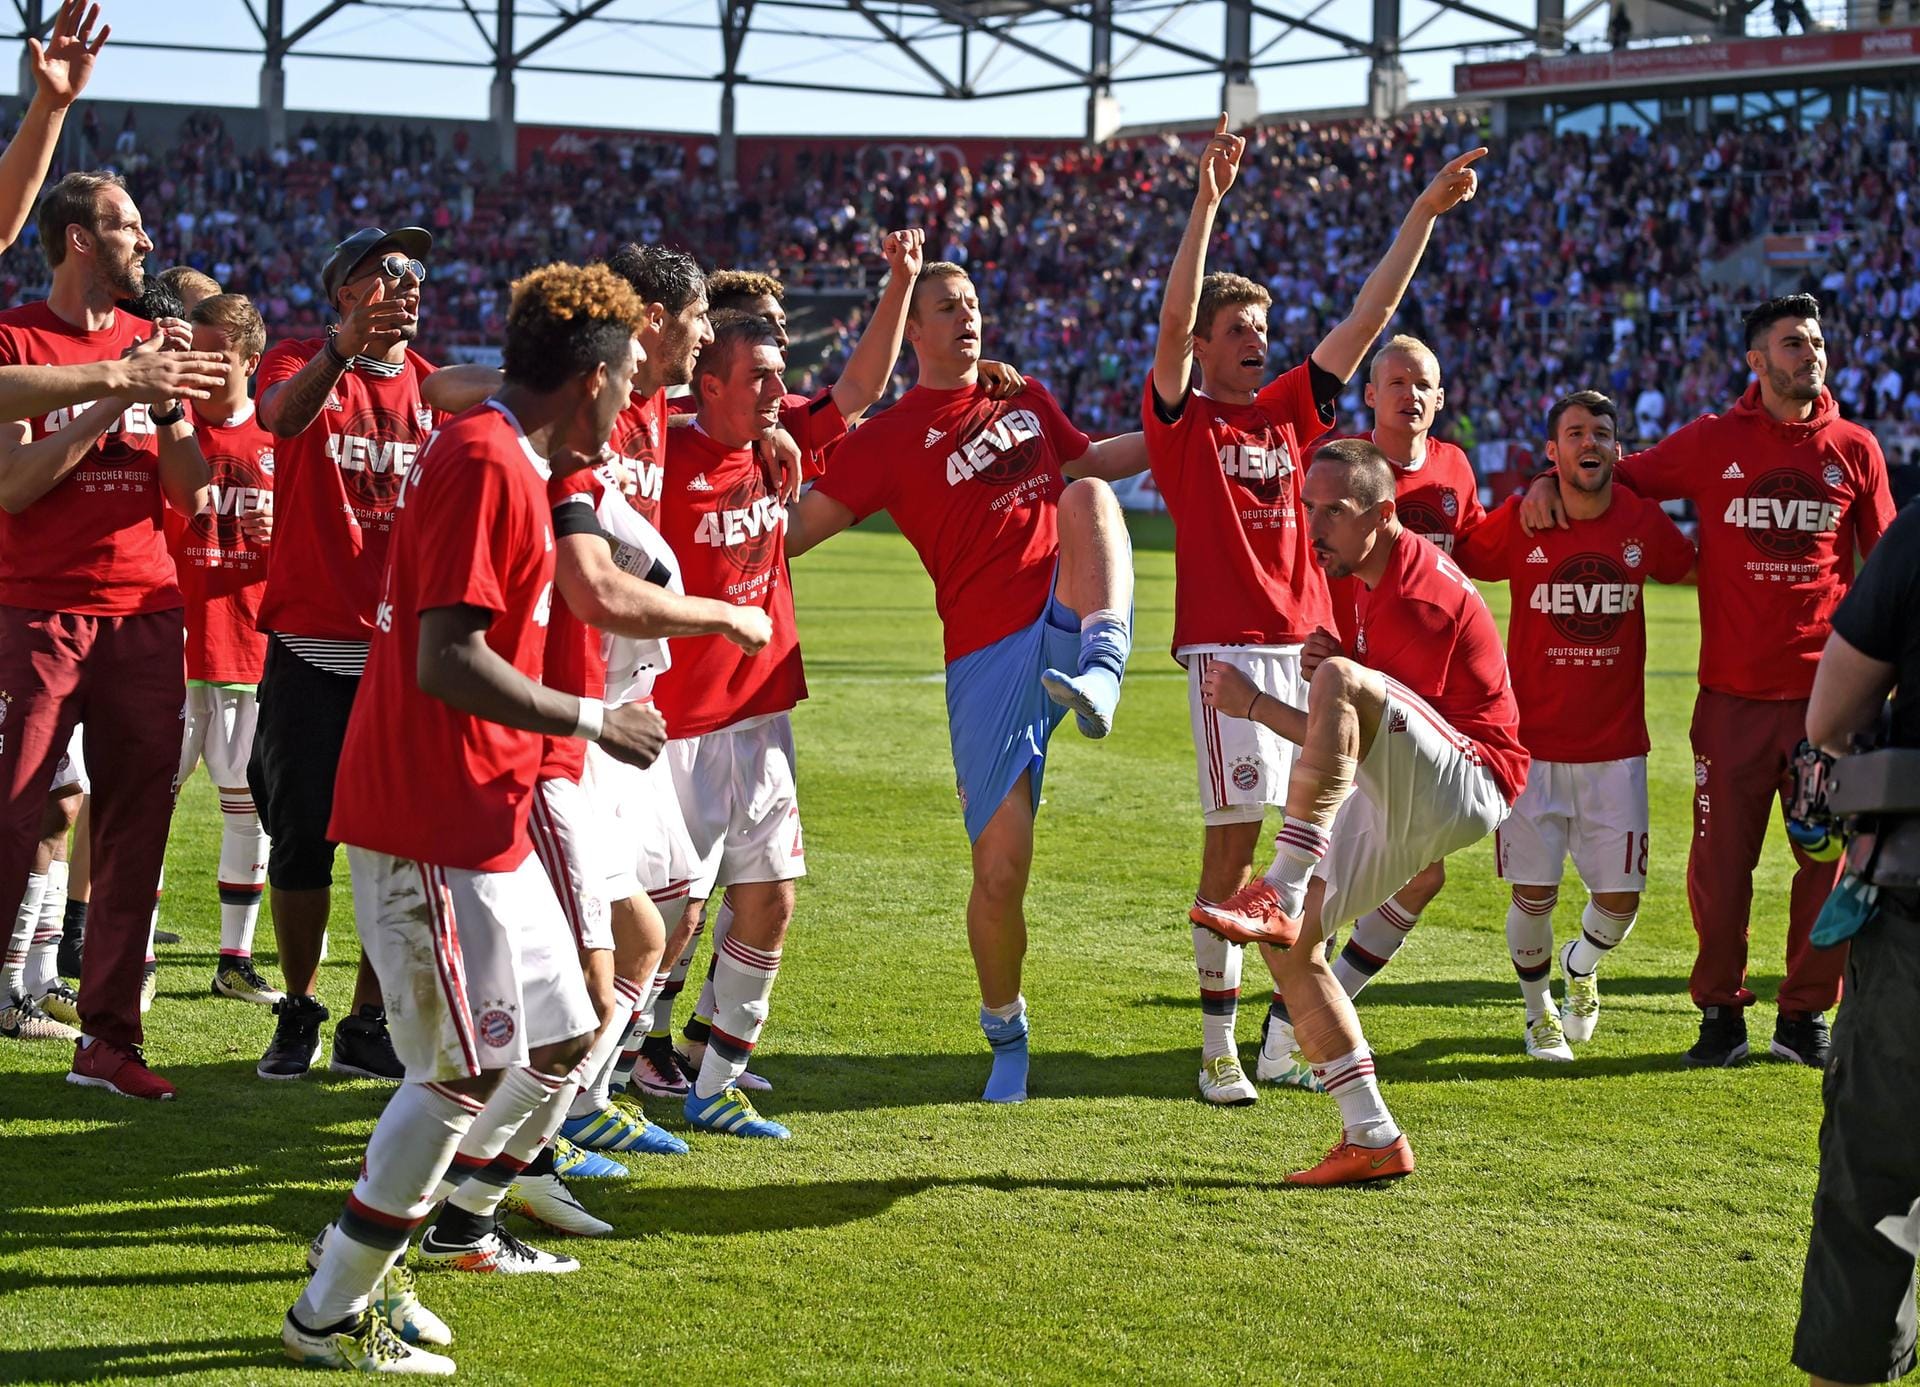 Meistertanz: Der FC Bayern München hat sich schon wieder den Titel geholt. Diesmal ist es aber ein ganz besonderer. Erstmals in der Geschichte des deutschen Fußball hat sich mit den Bayern ein Team vier Meisterschaften in Folge gesichert. Entsprechend ausgelassen freuten sich die Münchner nach dem Sieg in Ingolstadt über ihren Triumph. Top!